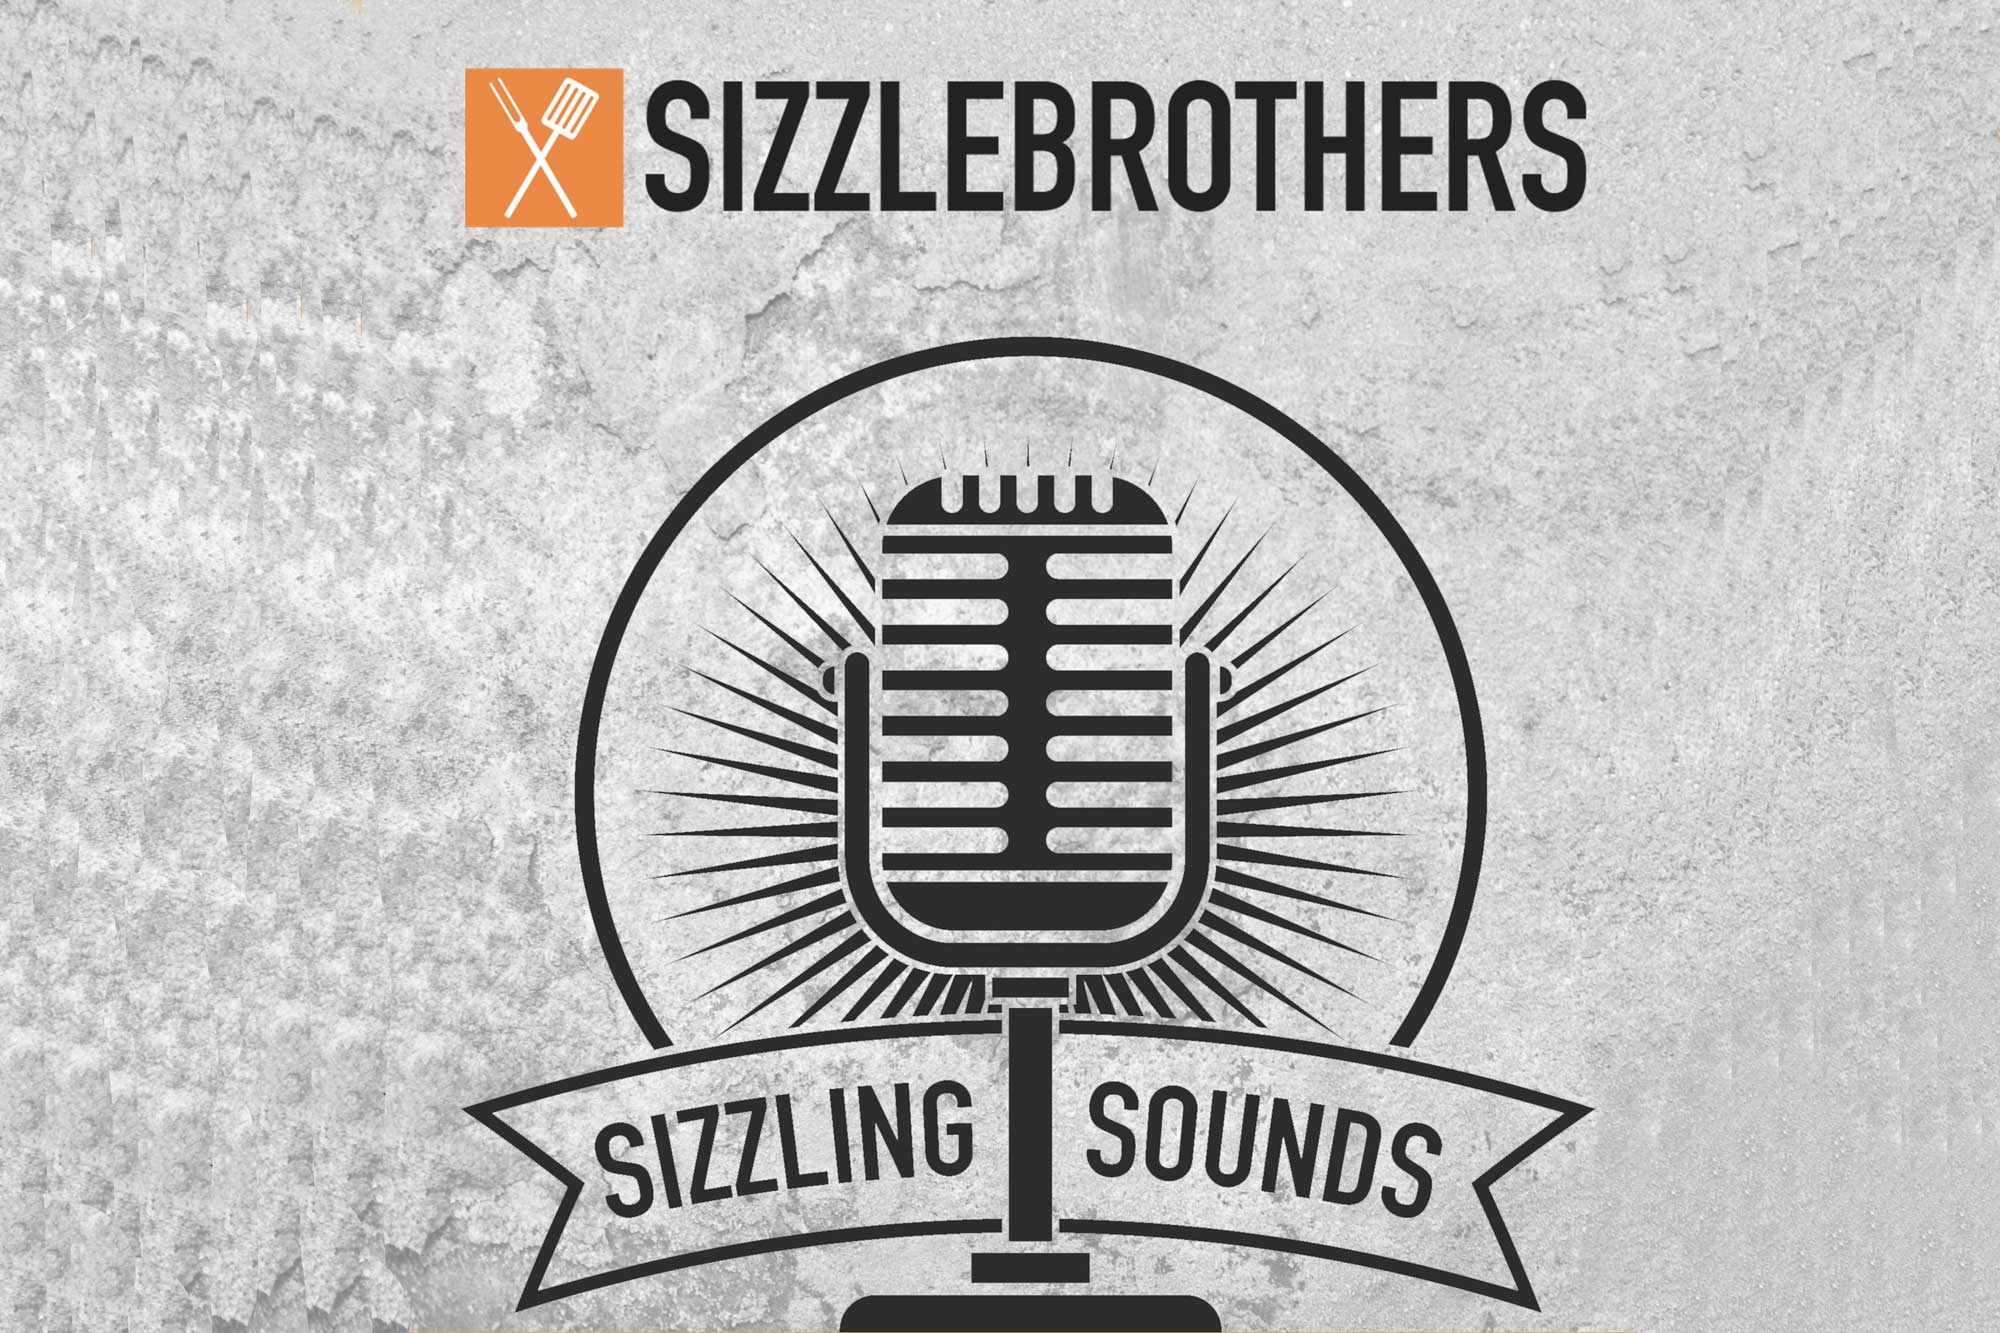 Corbi stellt sich vor, Webseitenentwicklung und mehr – Sizzling Sounds Podcast #5